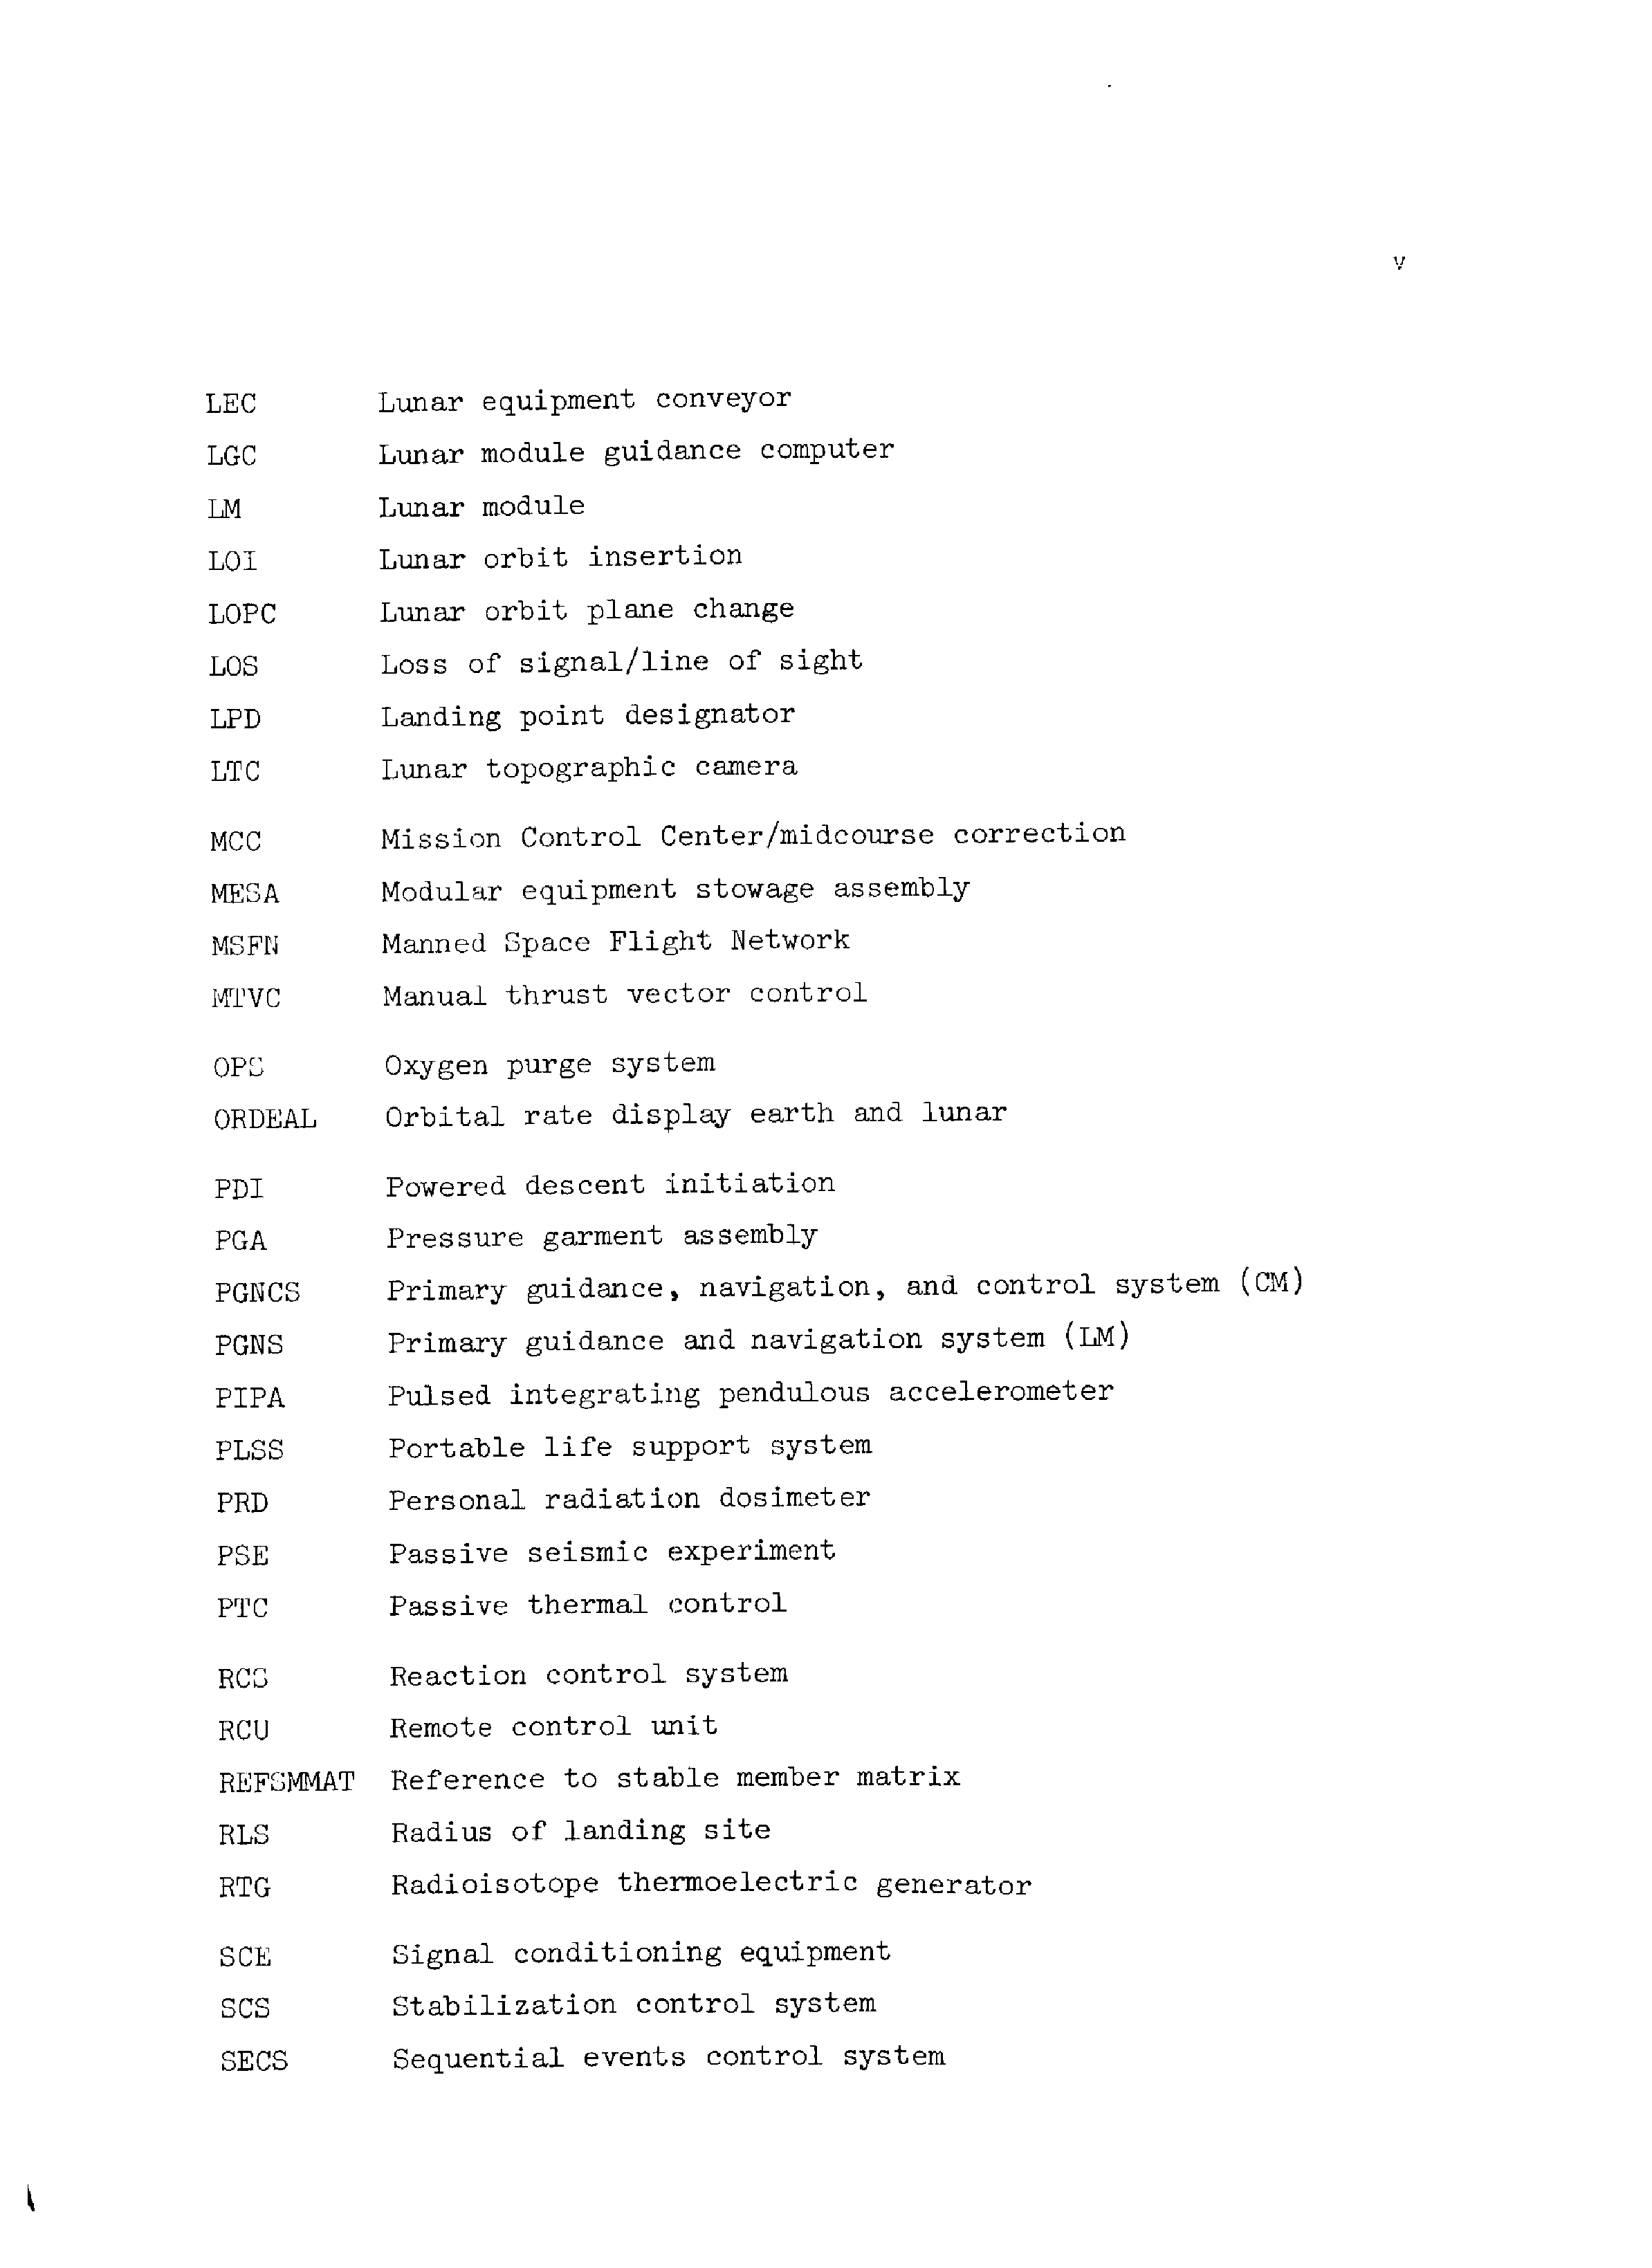 Page 6 of Apollo 13’s original transcript